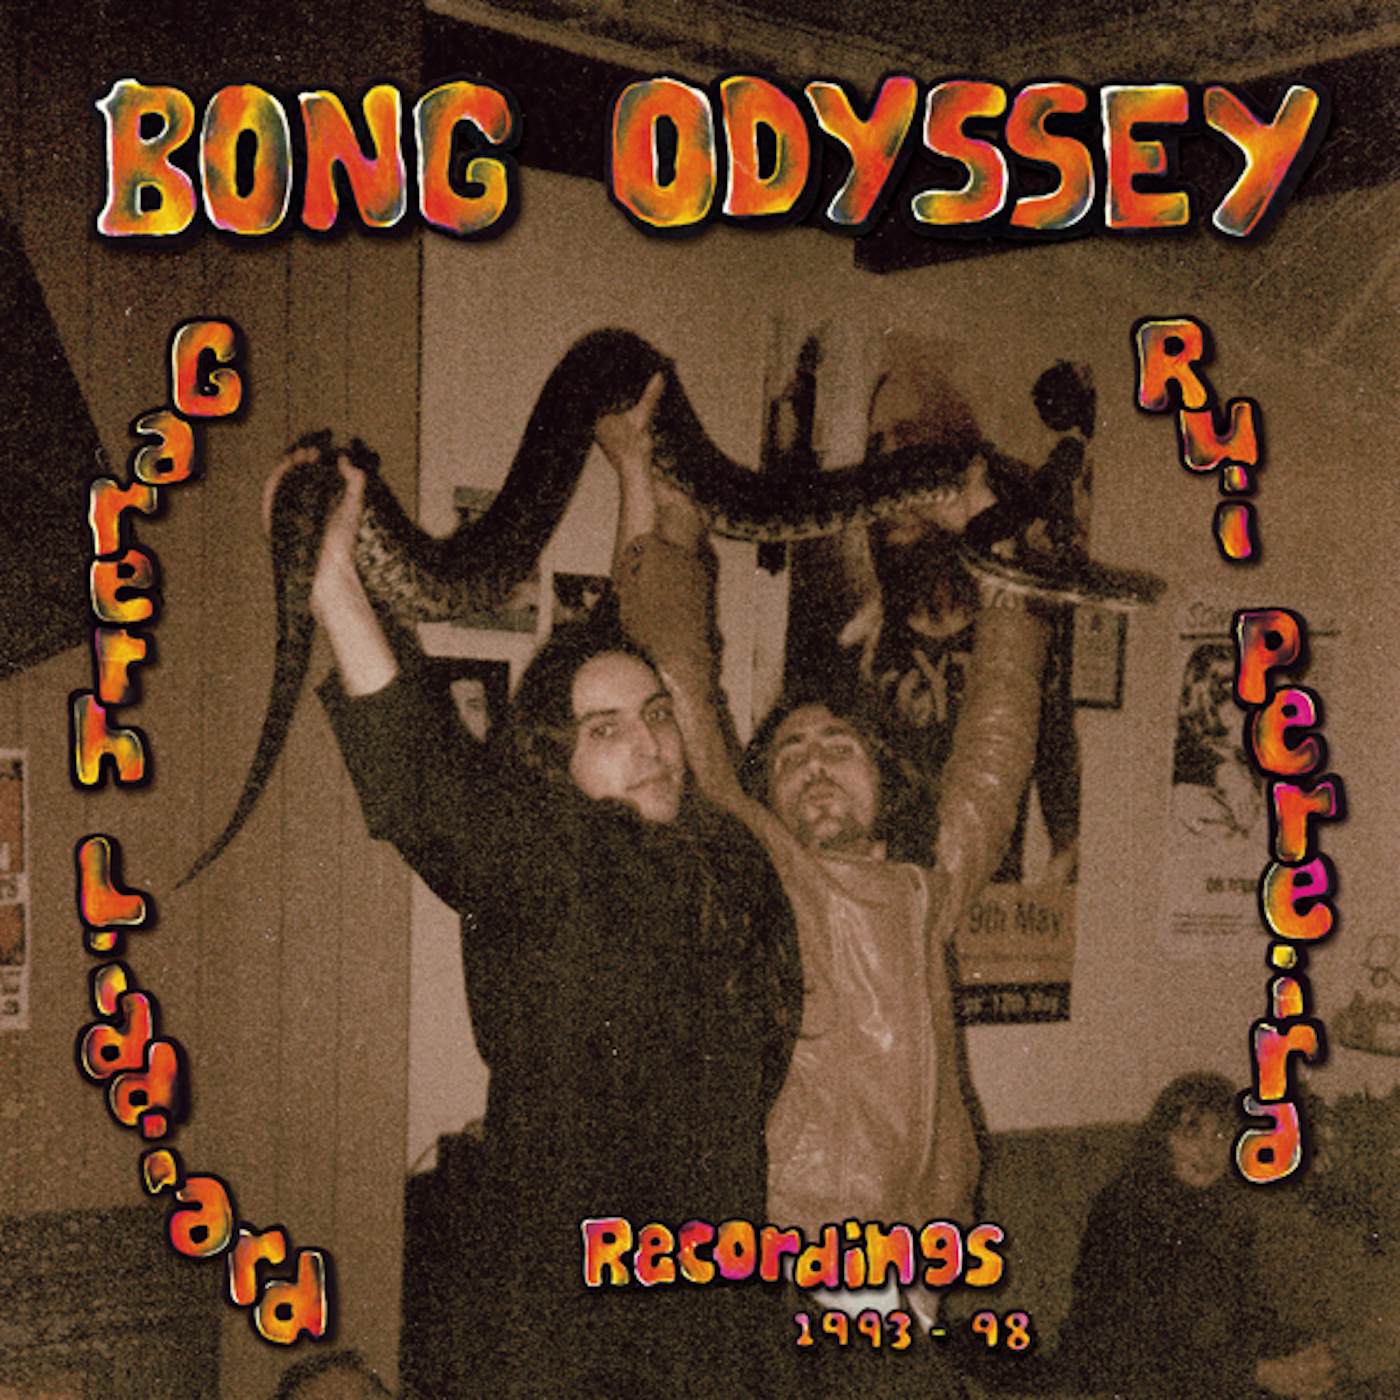 Bong Odyssey GARETH LIDDIARD & RUI PEREIRA - RECORDINGS 1993-98 Vinyl Record